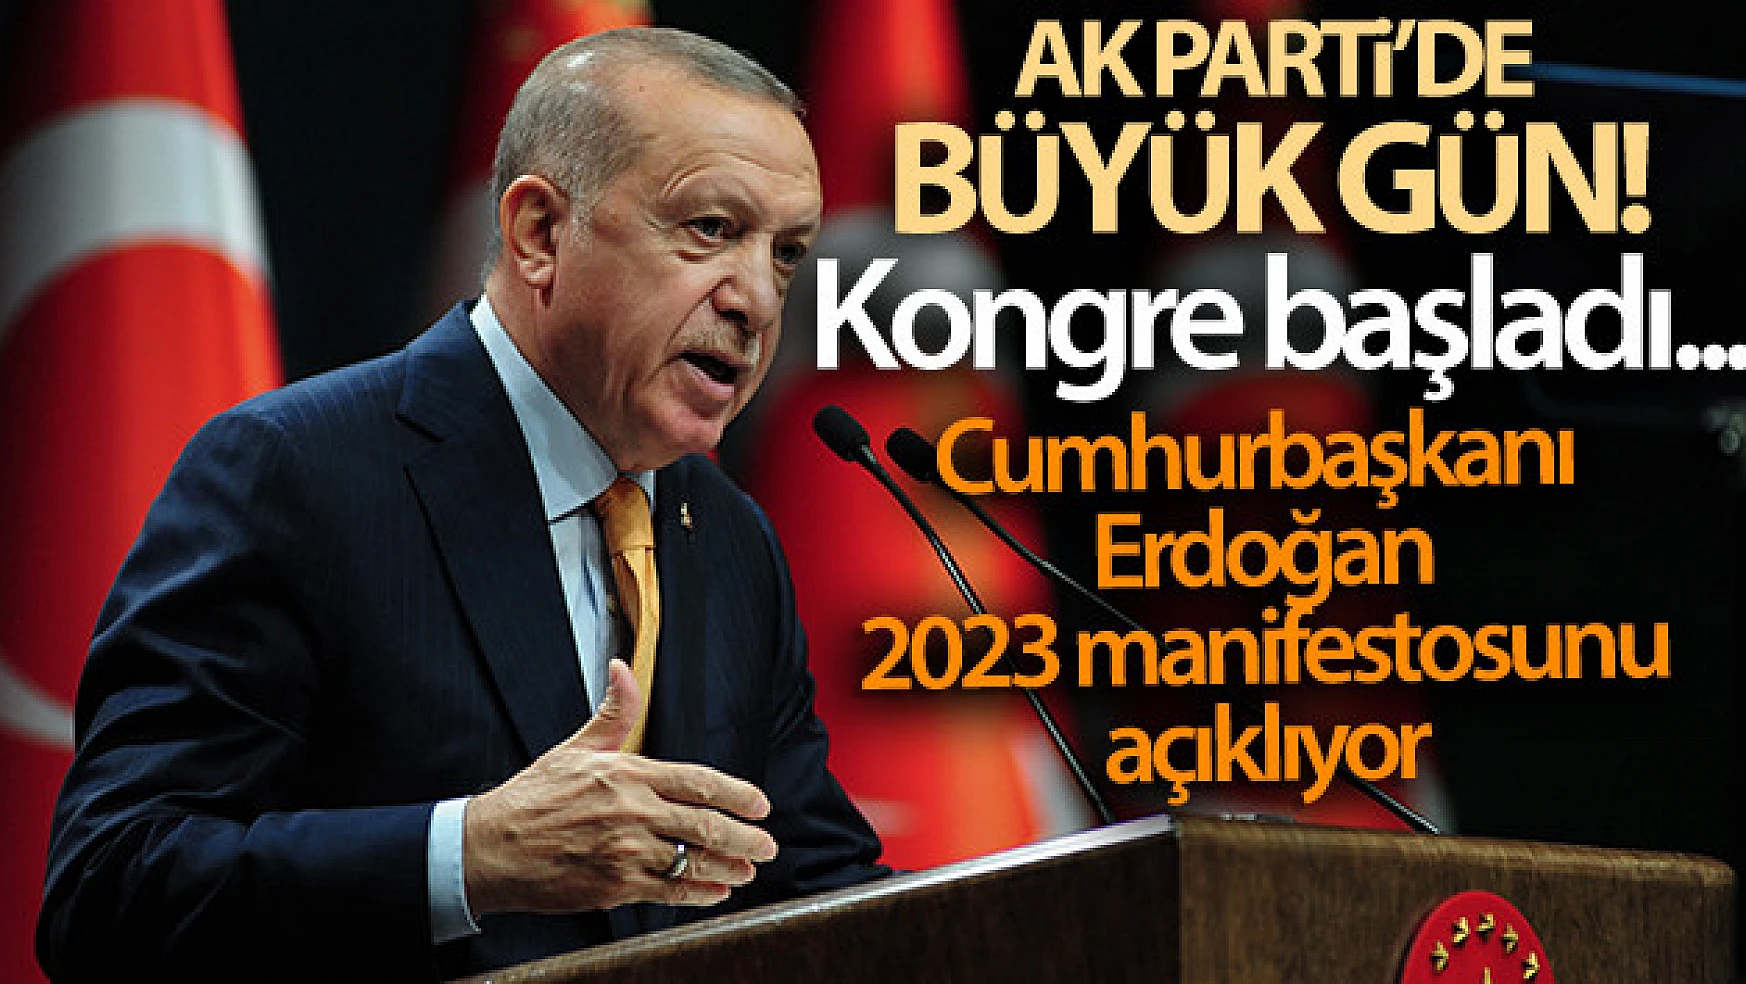 AK Parti'de büyük gün! Cumhurbaşkanı Erdoğan 2023 manifestosunu açıklıyor